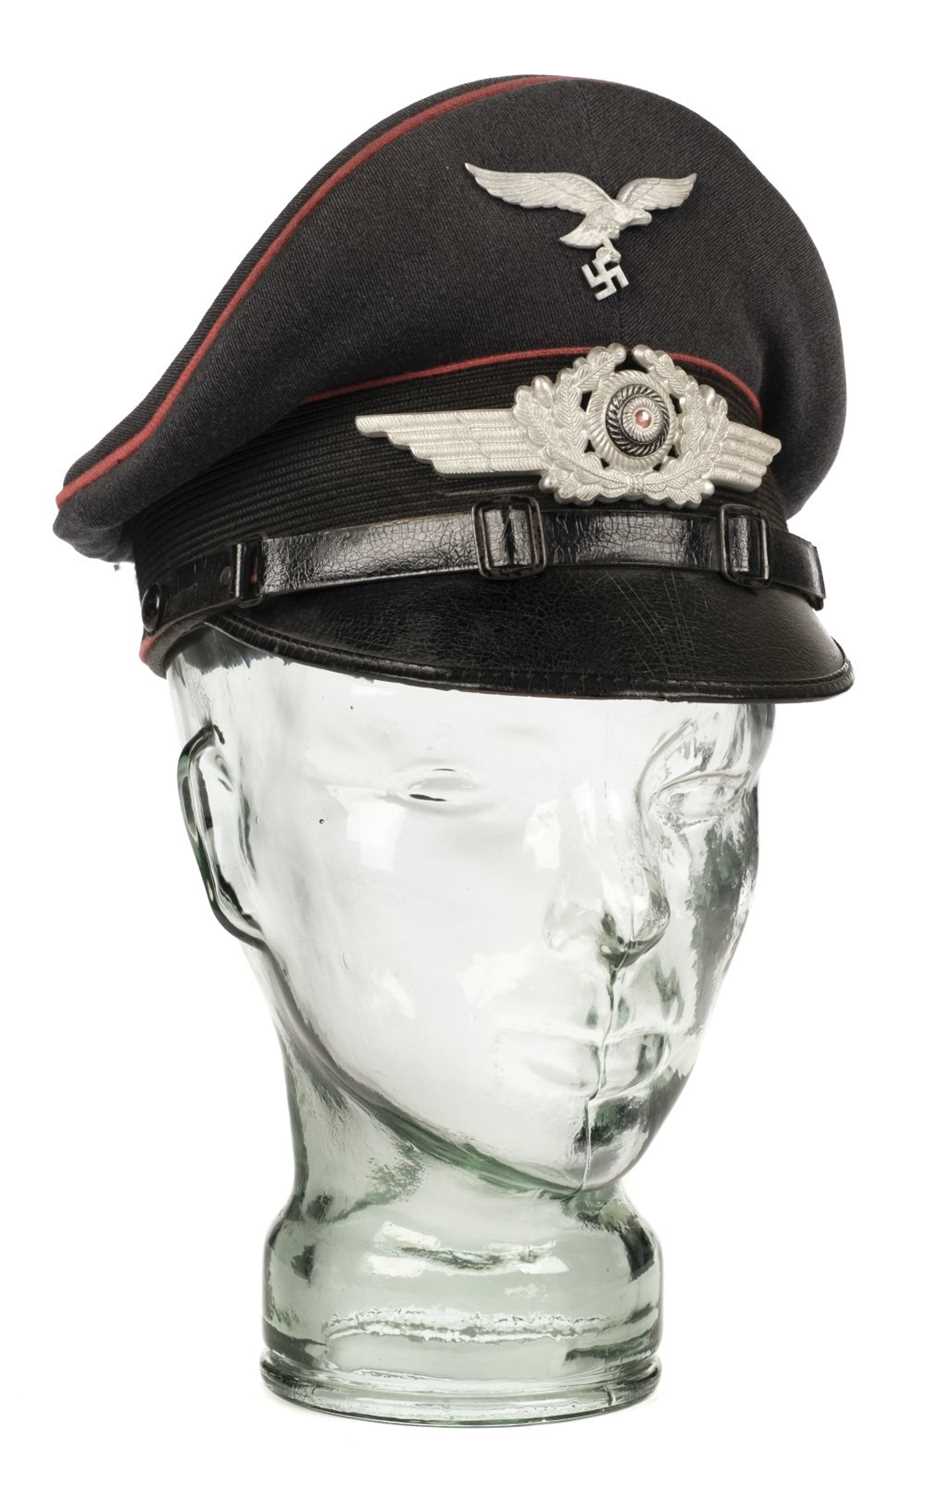 Lot 430 - Third Reich. WWII Luftwaffe Officer's visor